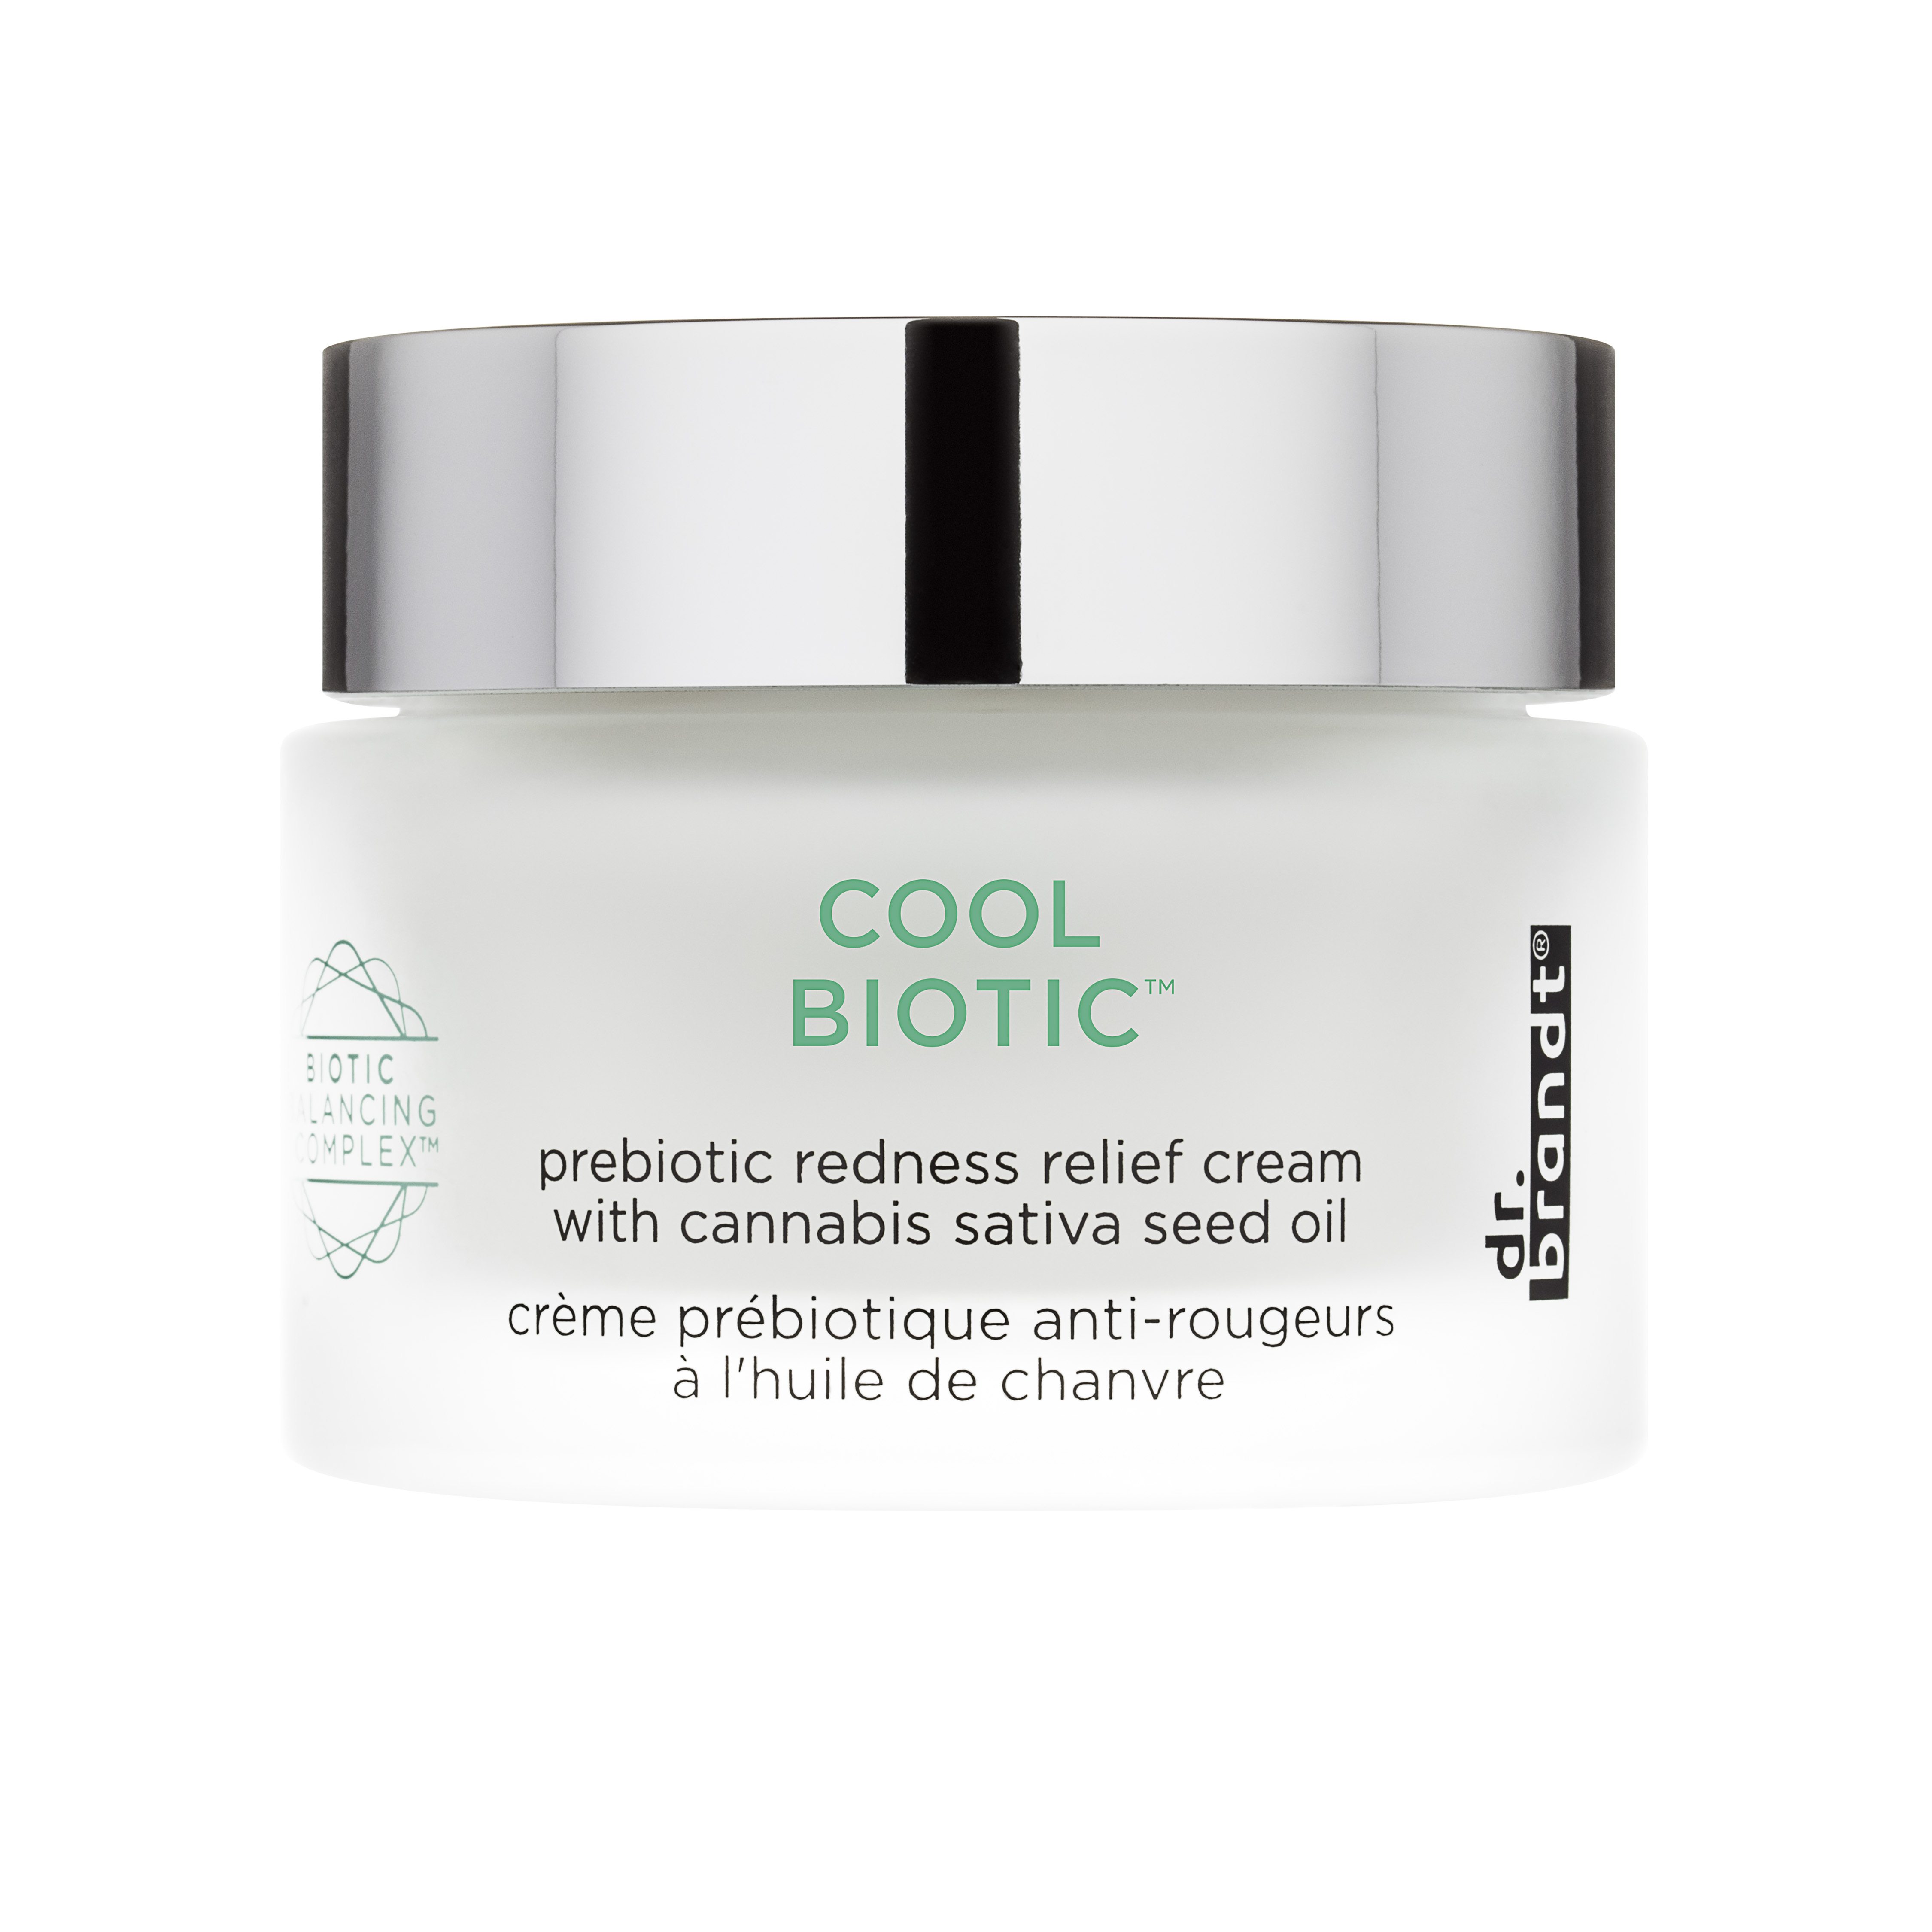 Luksuzna krema za lice Cool Biotic iz laboratorija dr.brandt smiruje osjetljivu kožu lica u samo dvije minute!